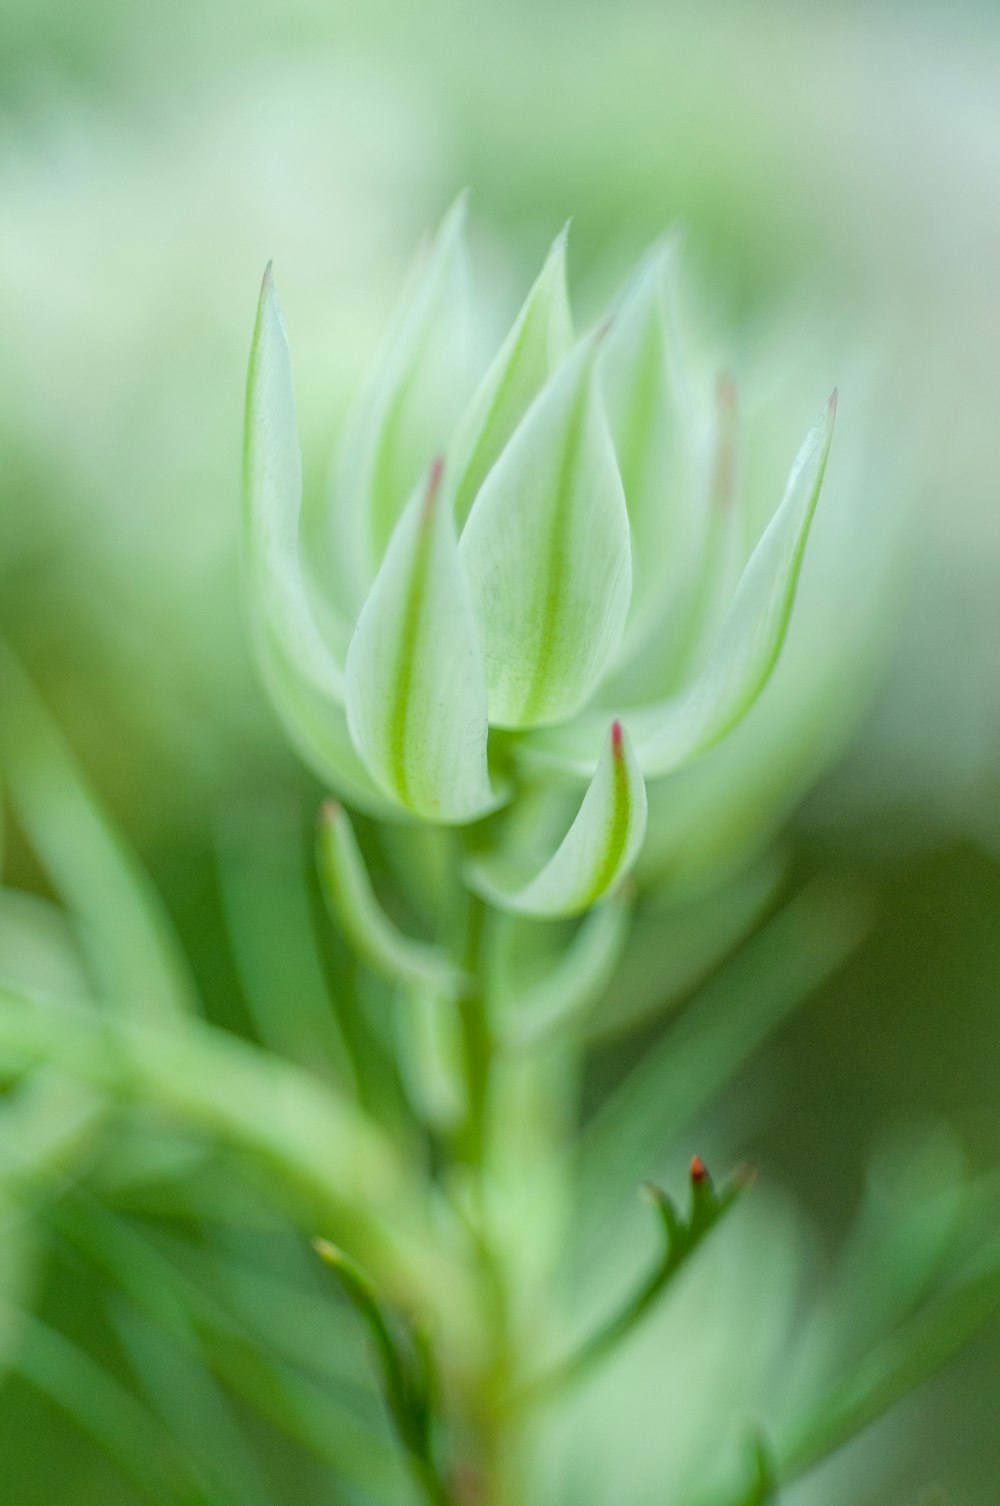 um close up de uma planta com um fundo desfocado